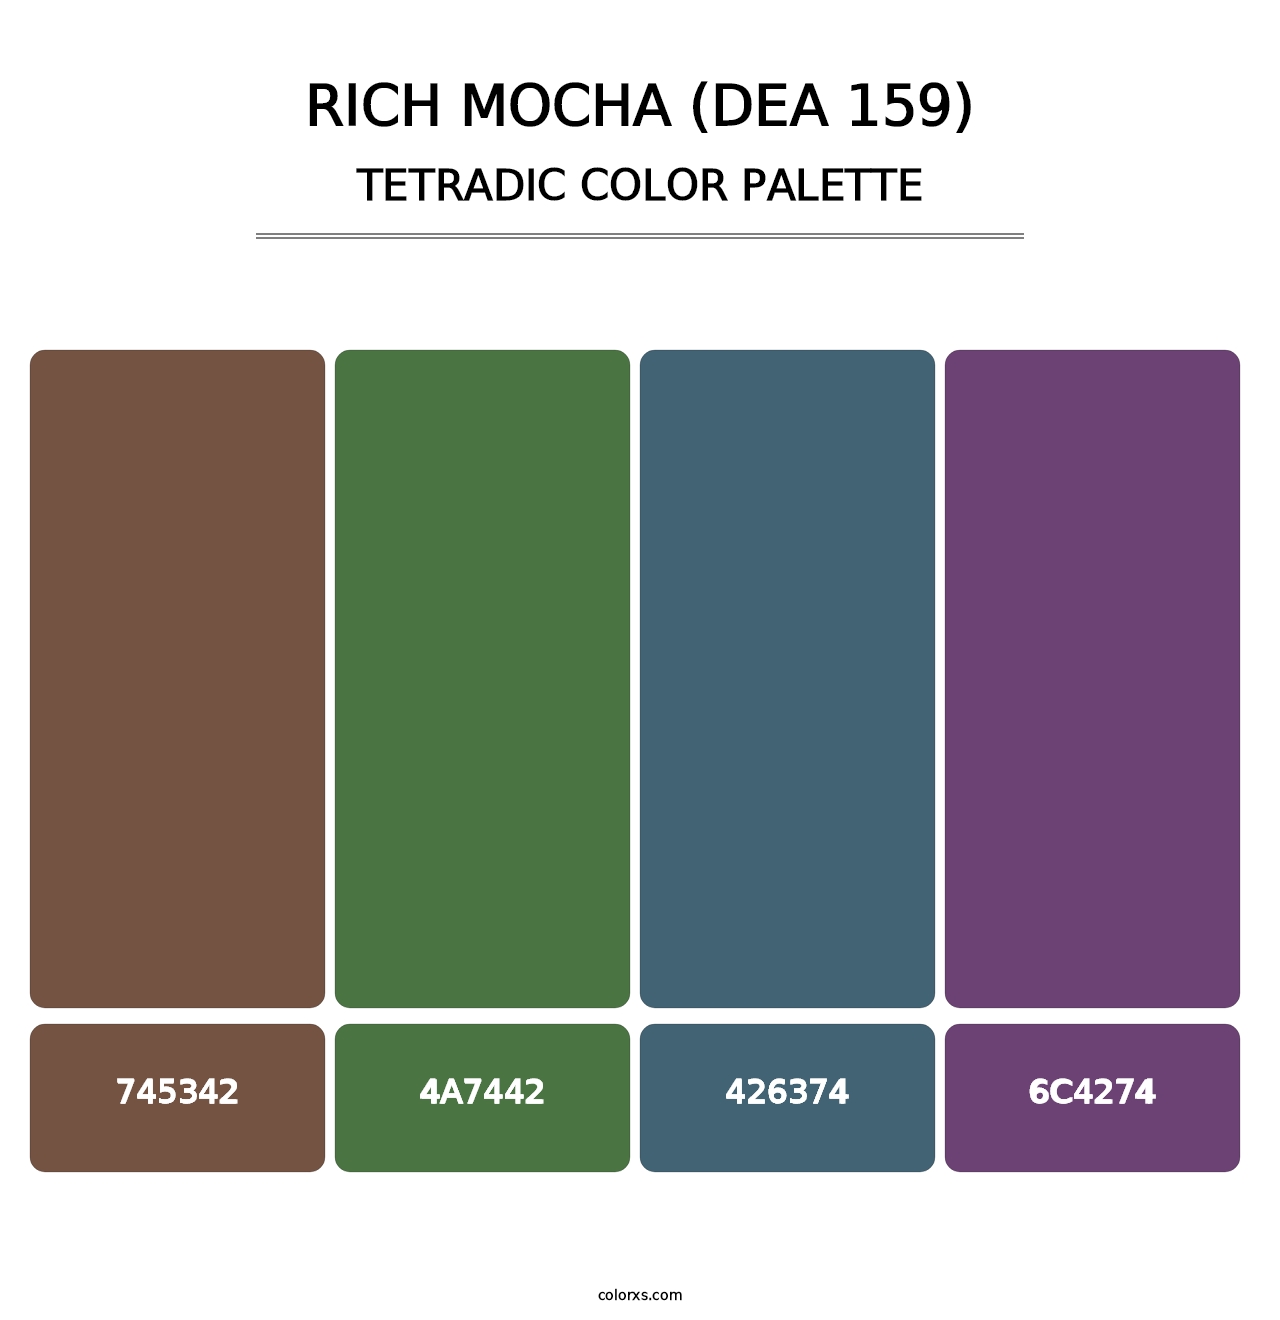 Rich Mocha (DEA 159) - Tetradic Color Palette